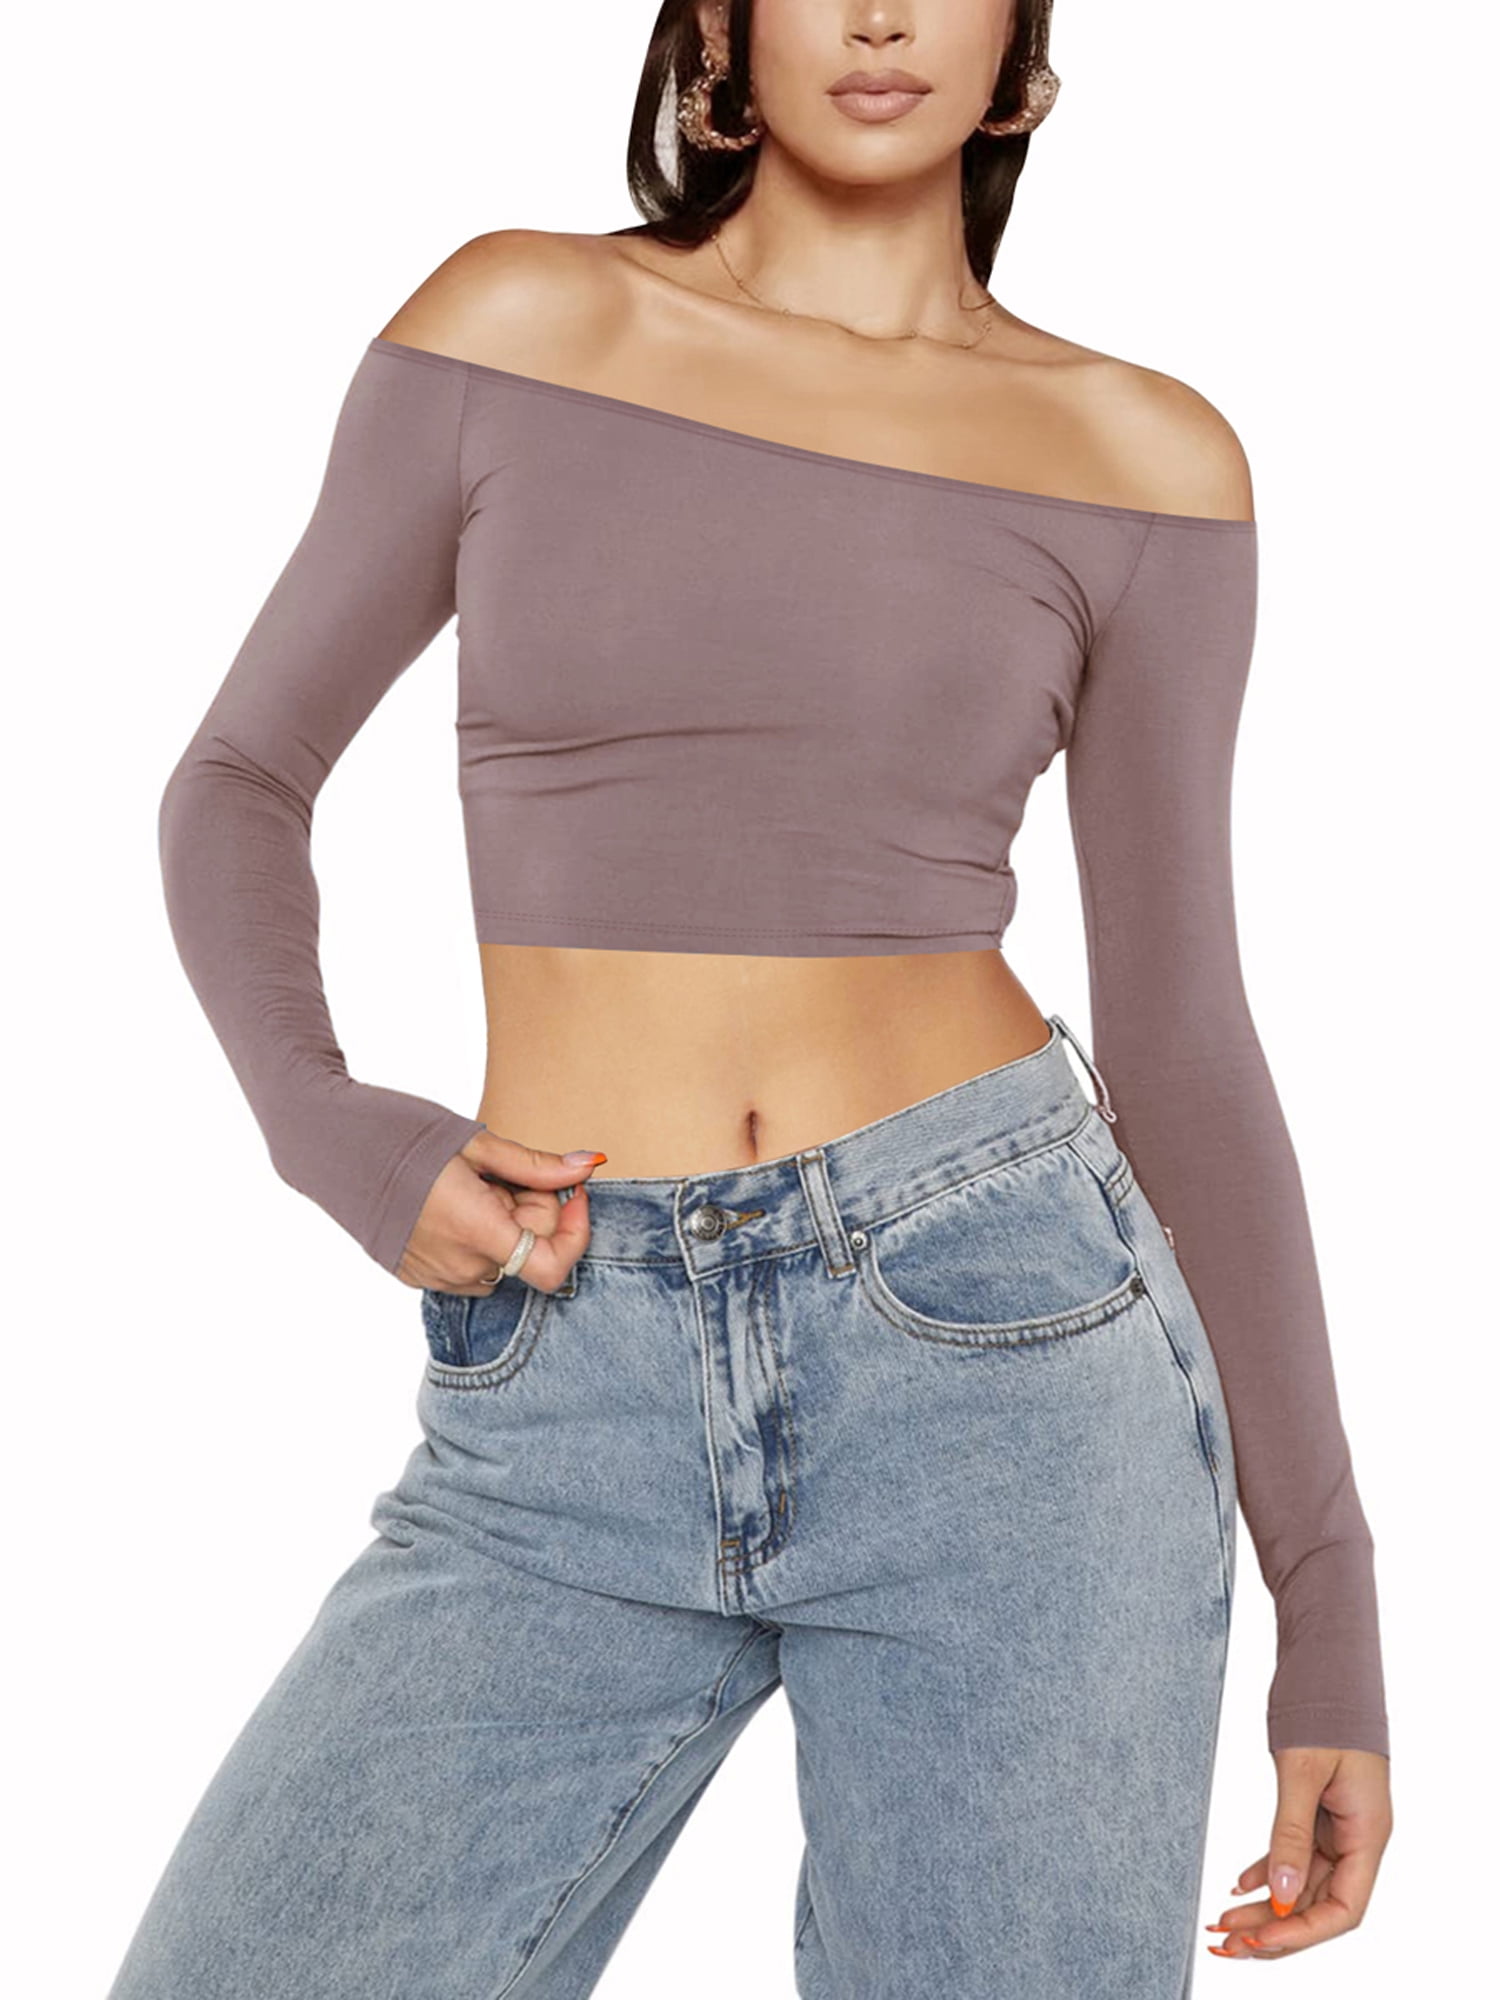 Tilbageholde Uretfærdig alder Women Off Shoulder Slim Fit Crop Top Long Sleeve Going Out Tops Backless  Solid Tee Shirt Y2k Blouse - Walmart.com